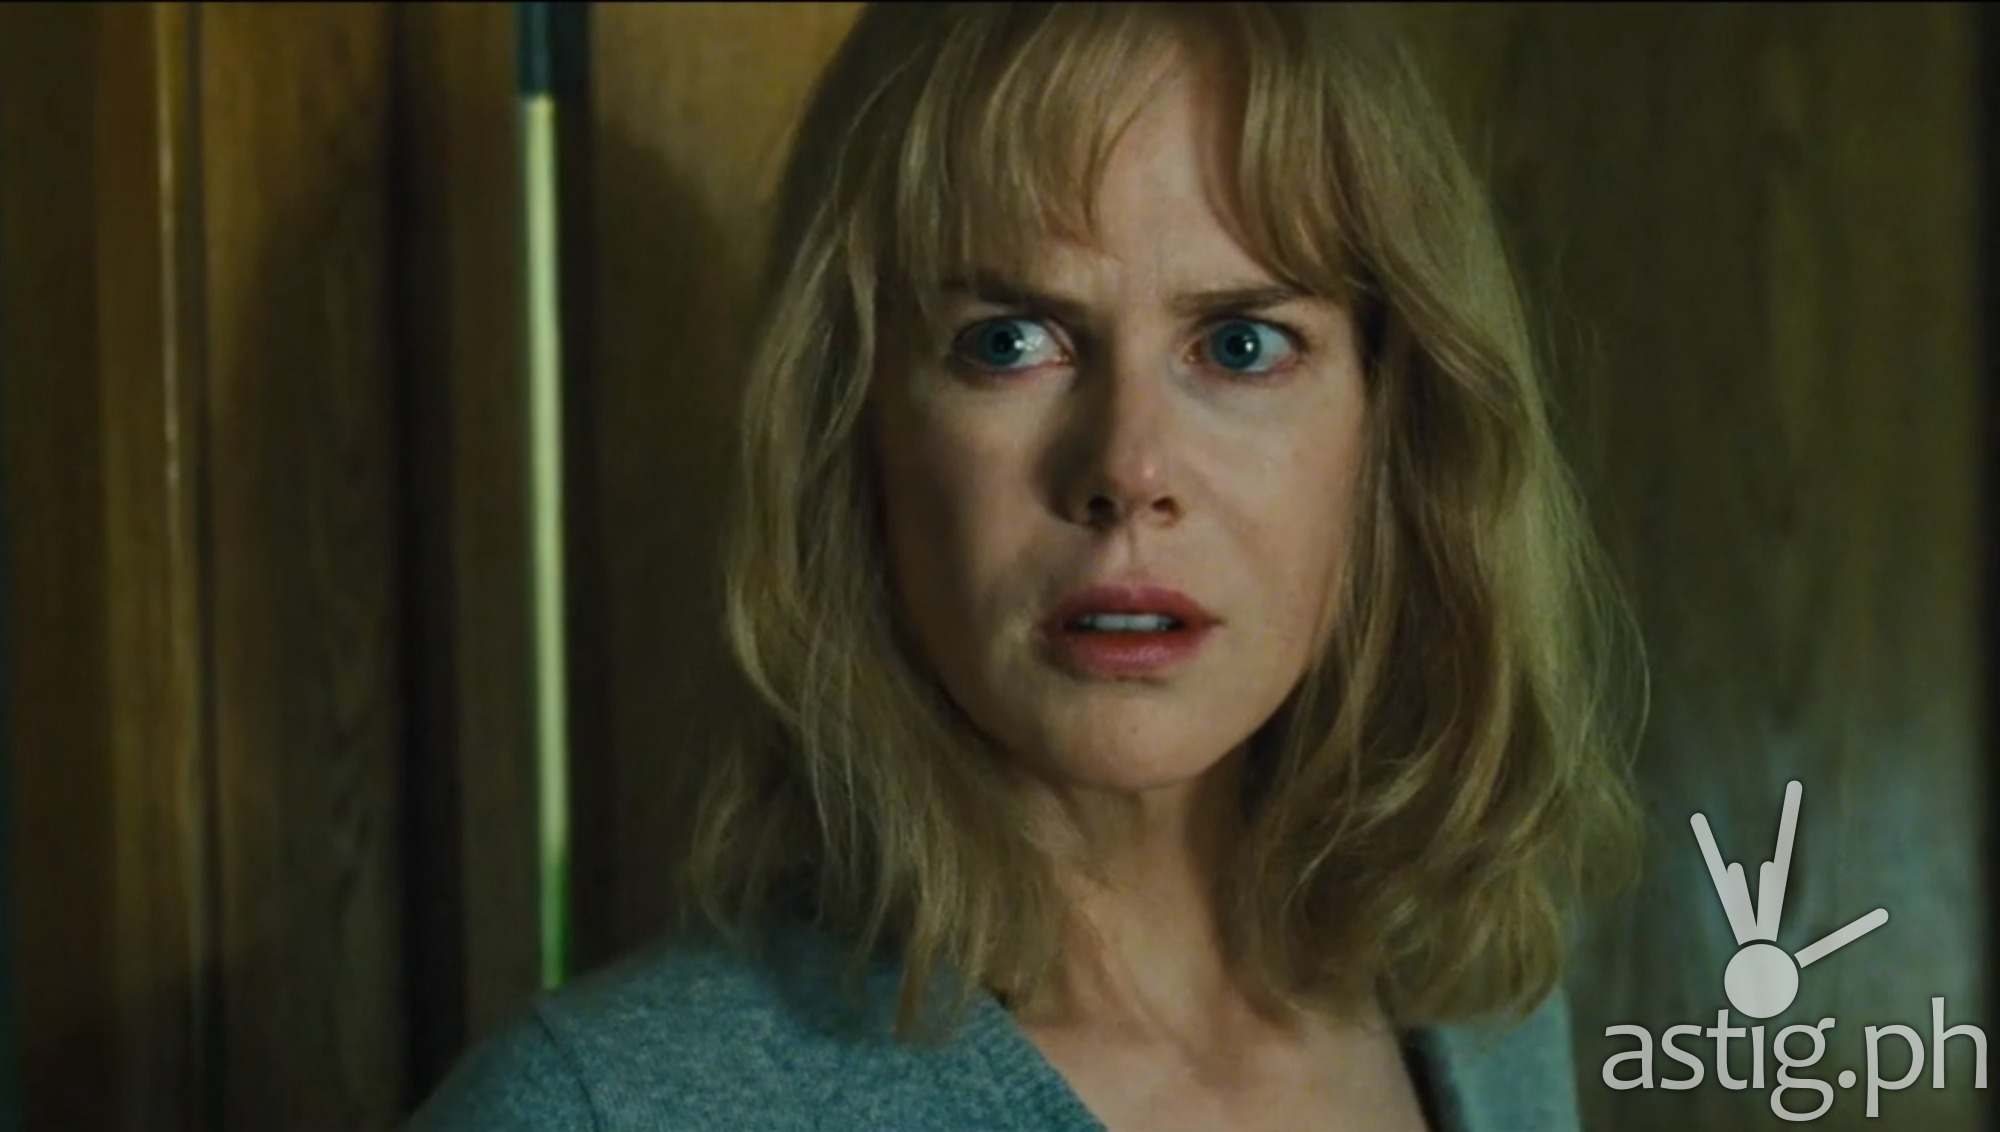 Nicole Kidman in Before I Go To Sleep